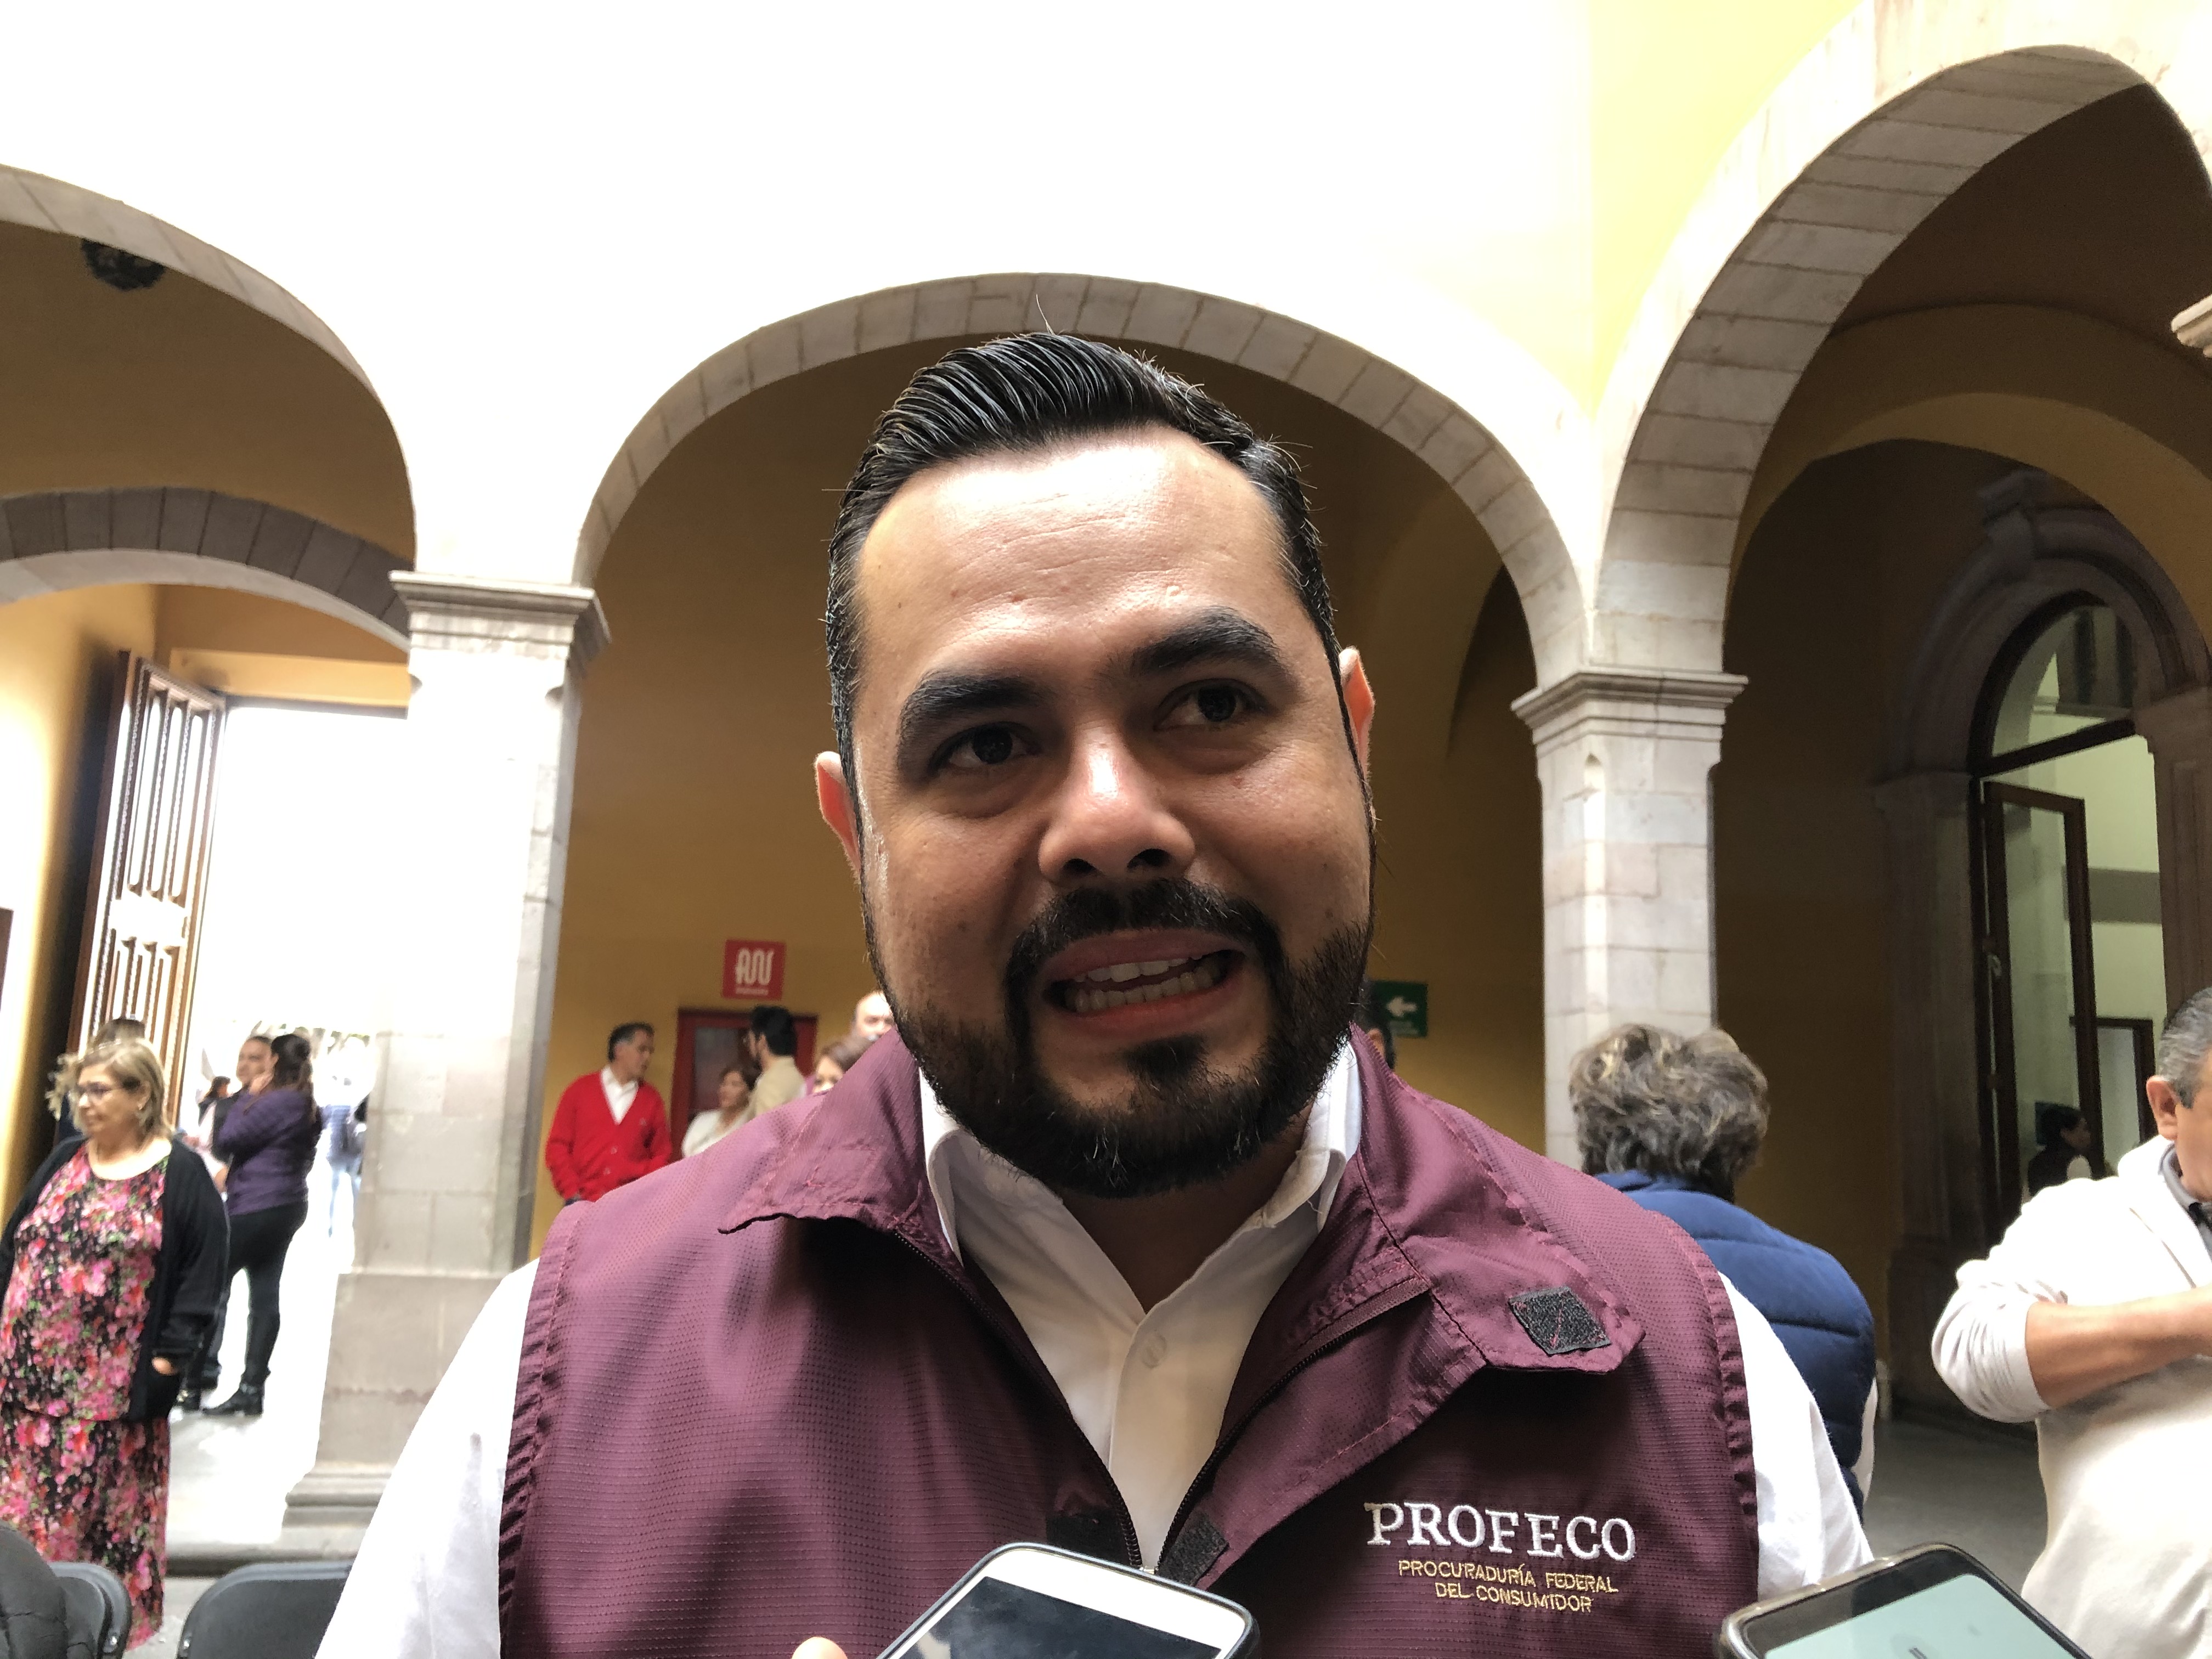  Buscará Profeco Querétaro conciliar antes de aplicar multas o sanciones por El Buen Fin